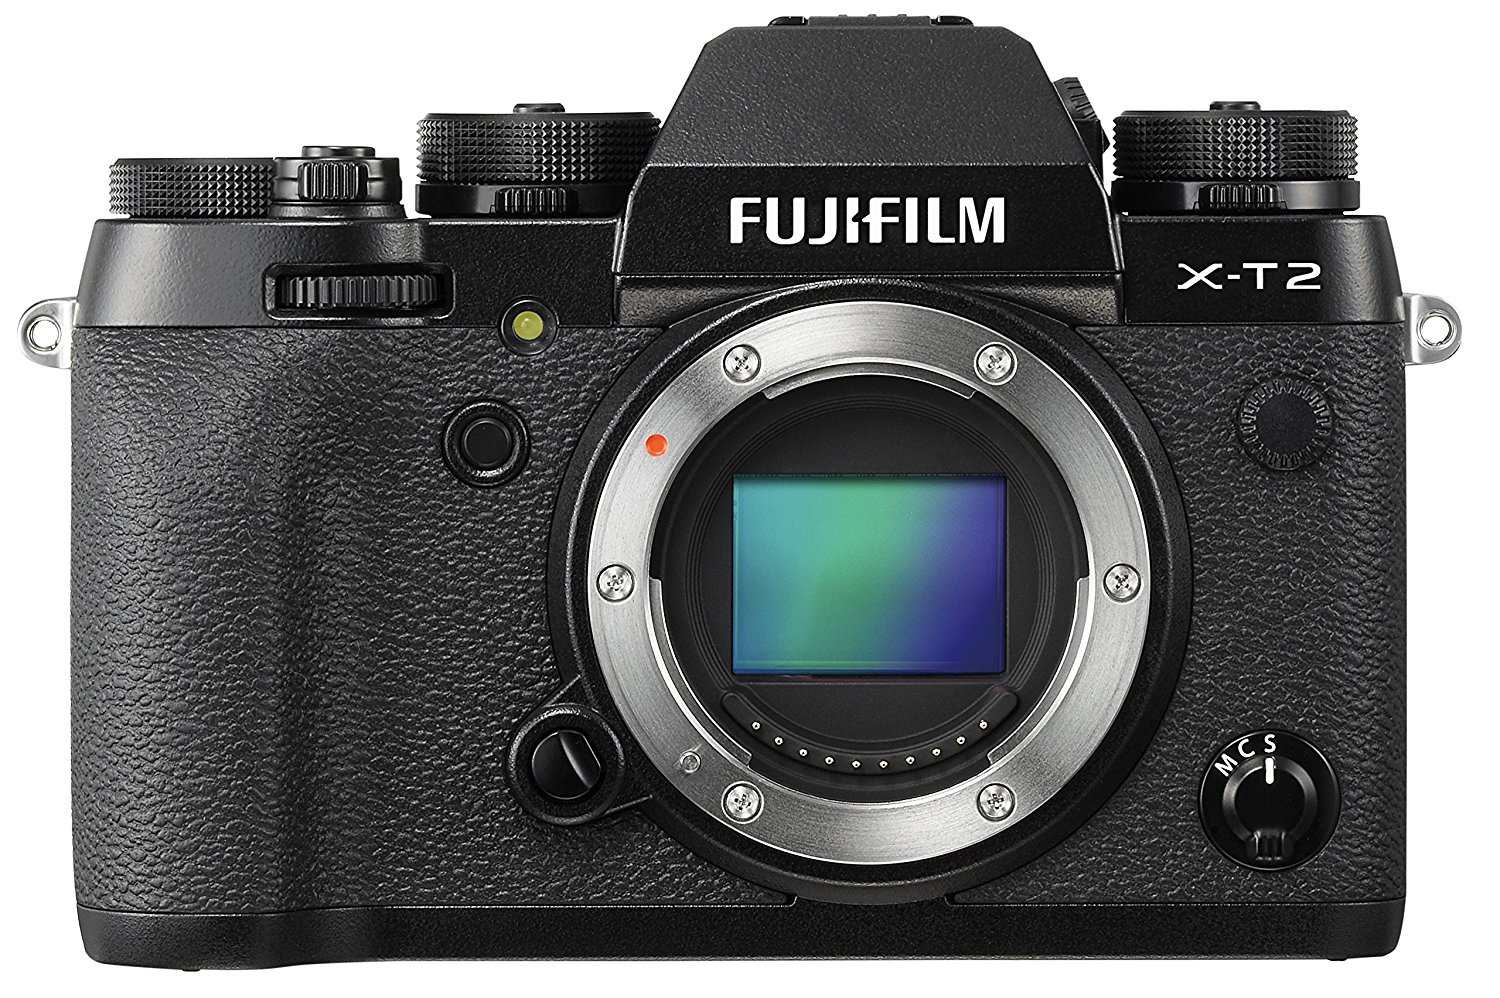 Fujifilm x-t2